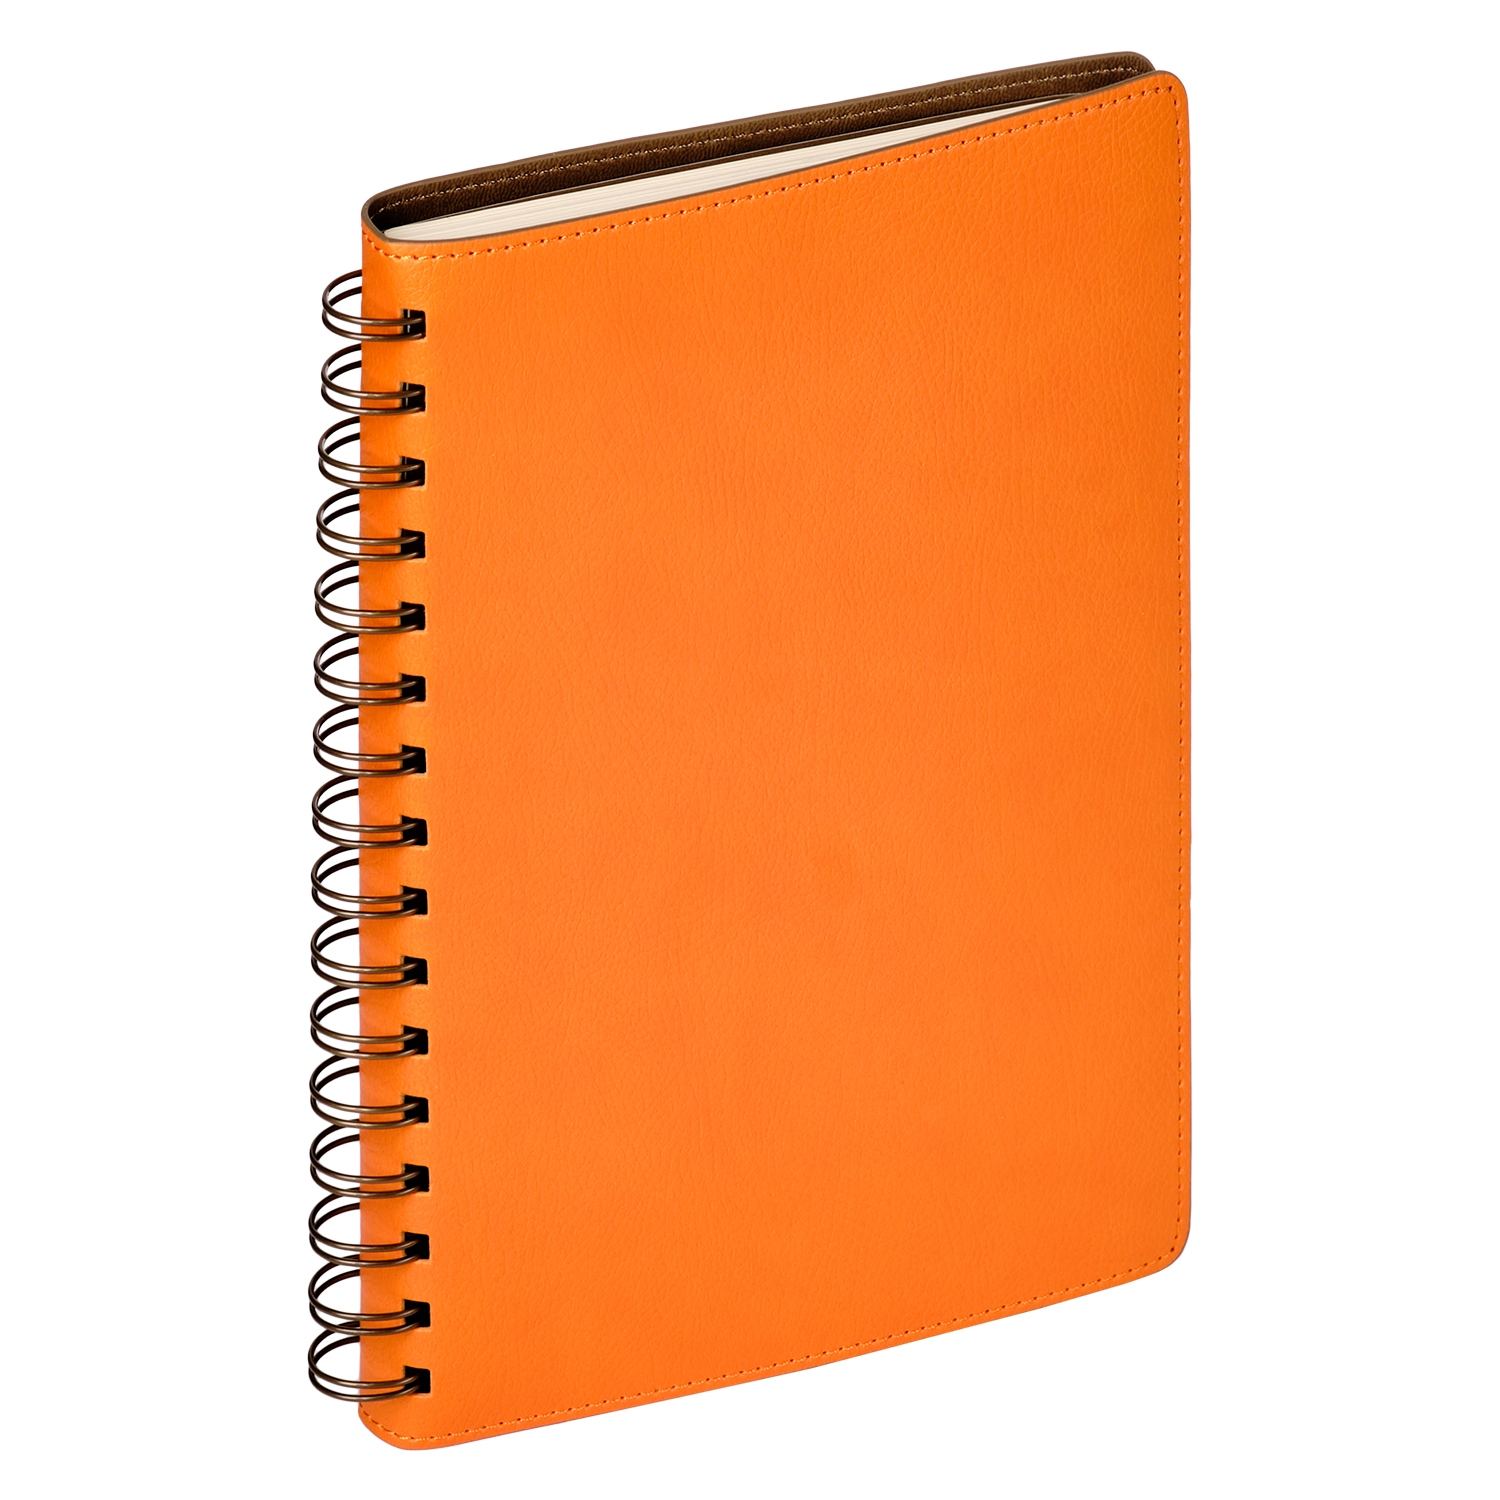 Ежедневник Vista недатированный, оранжевый/коричневый, оранжевый